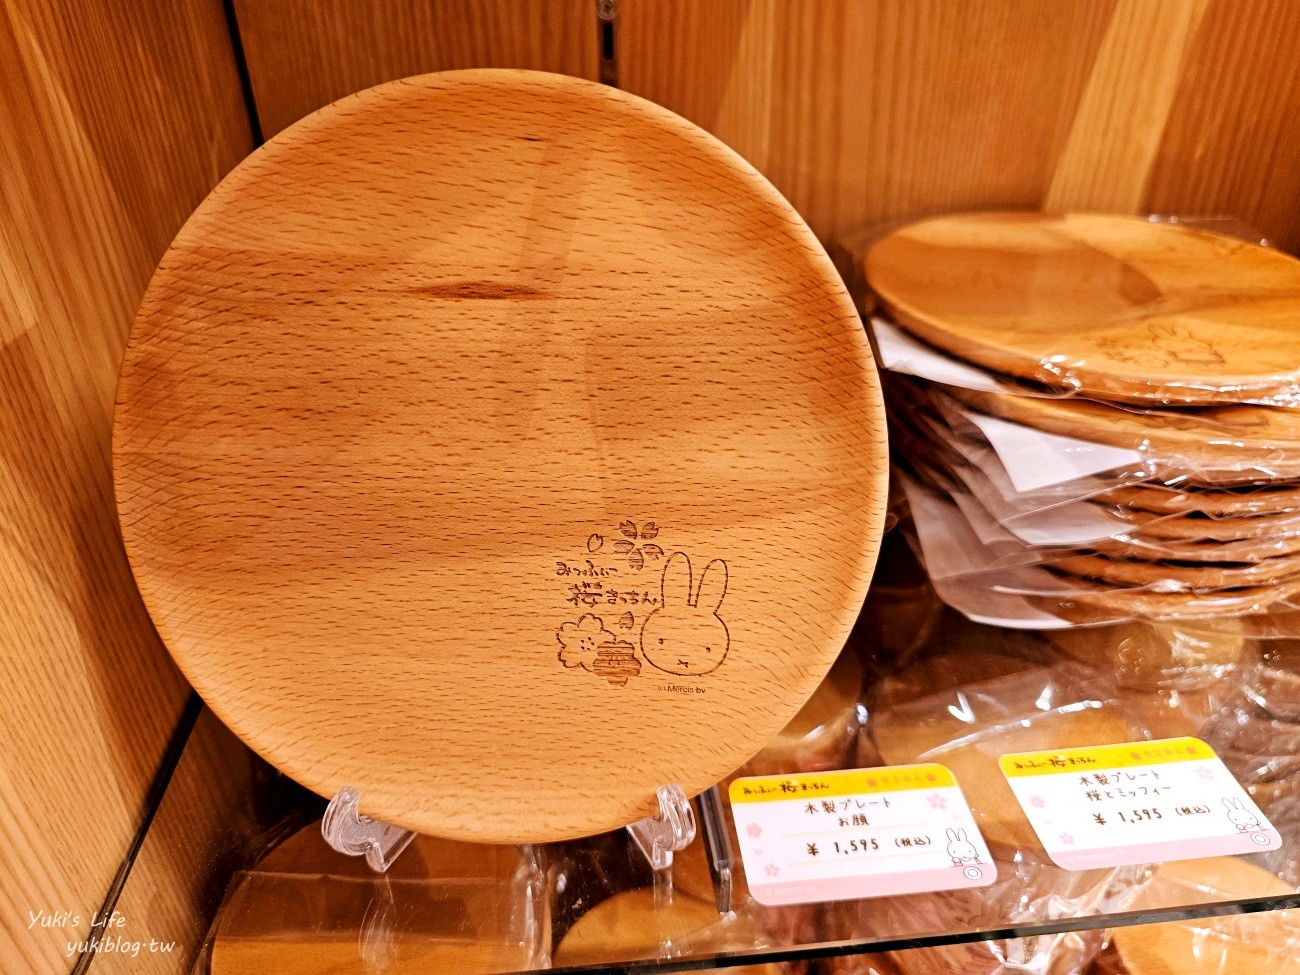 京都必吃美食》京都嵐山米菲兔麵包店，Miffy麵包太可愛了～ - yukiblog.tw